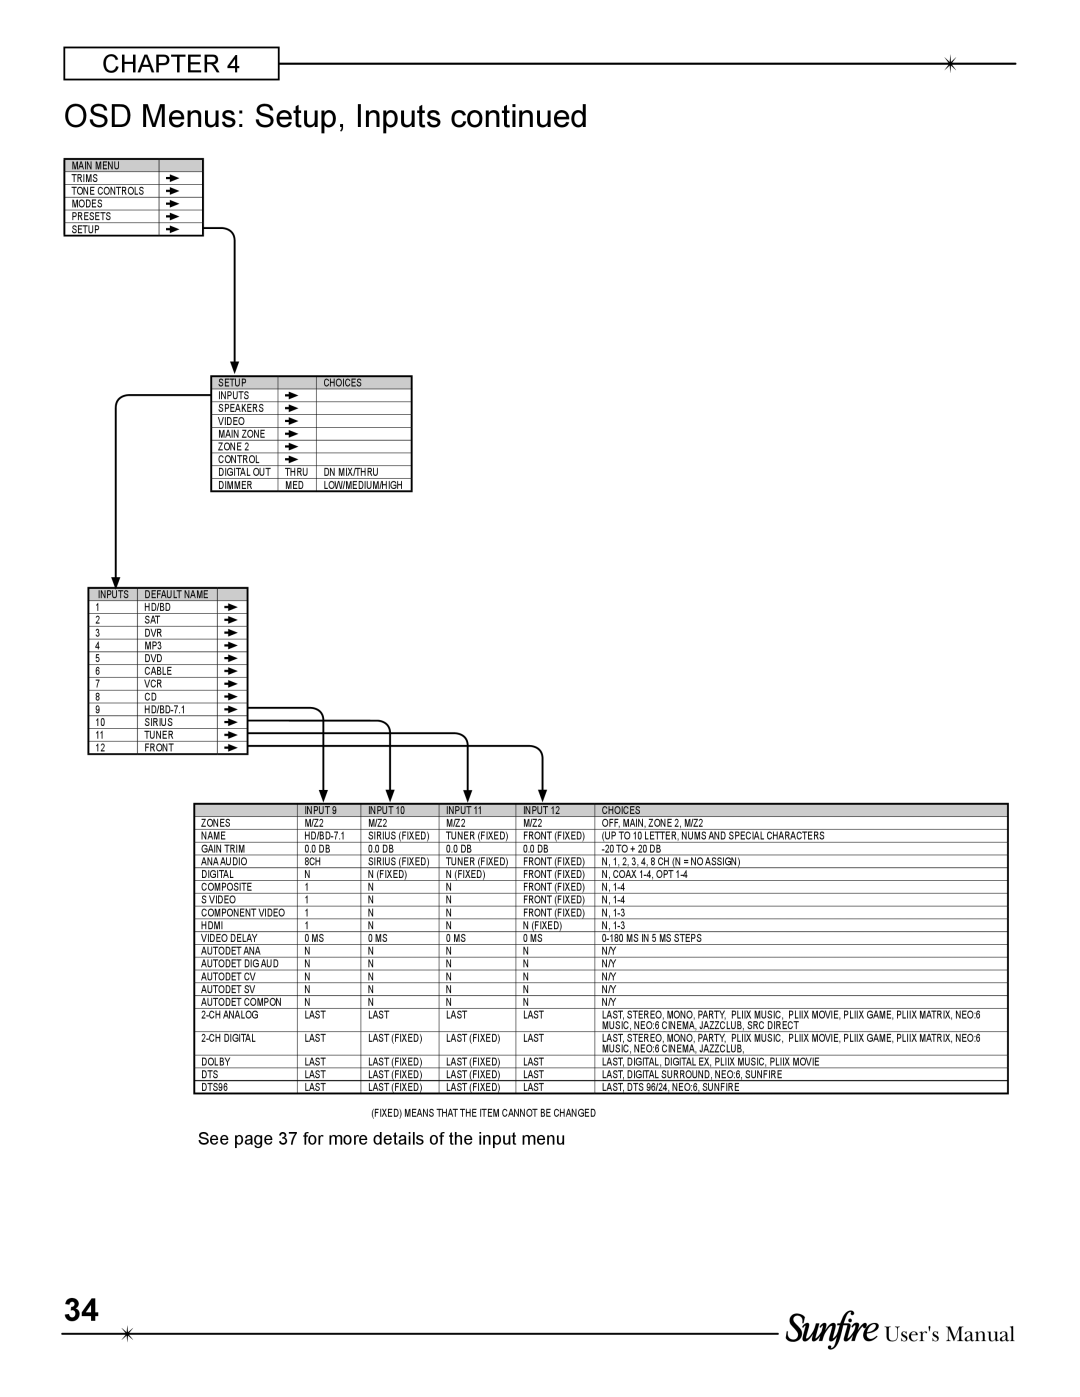 Sunfire TGR-401-230 manual OSD Menus: Setup, Inputs continued, Users Manual 